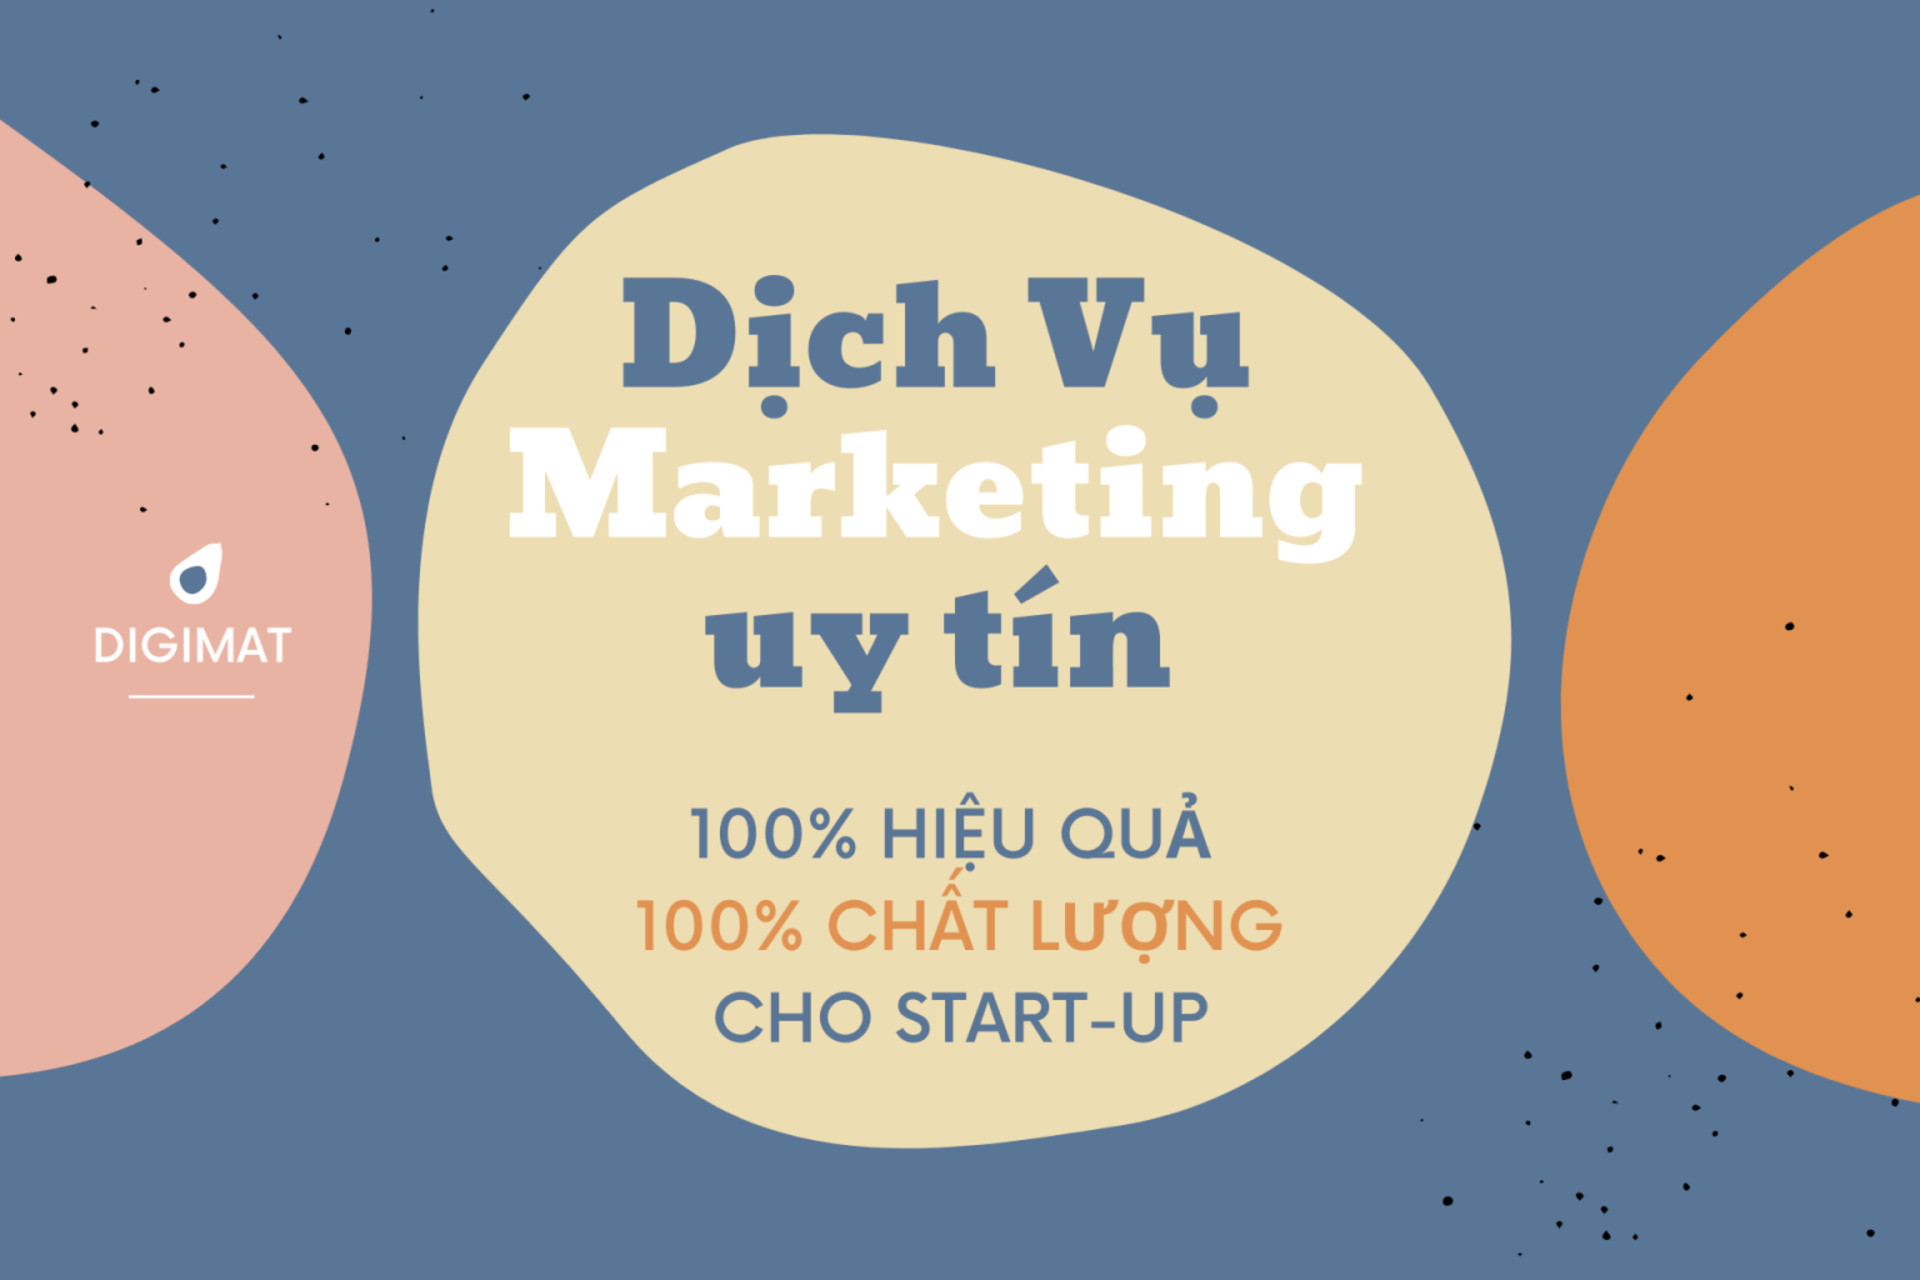 Dịch vụ Marketing Uy tín - Tiết kiệm cho Startup | Digimat